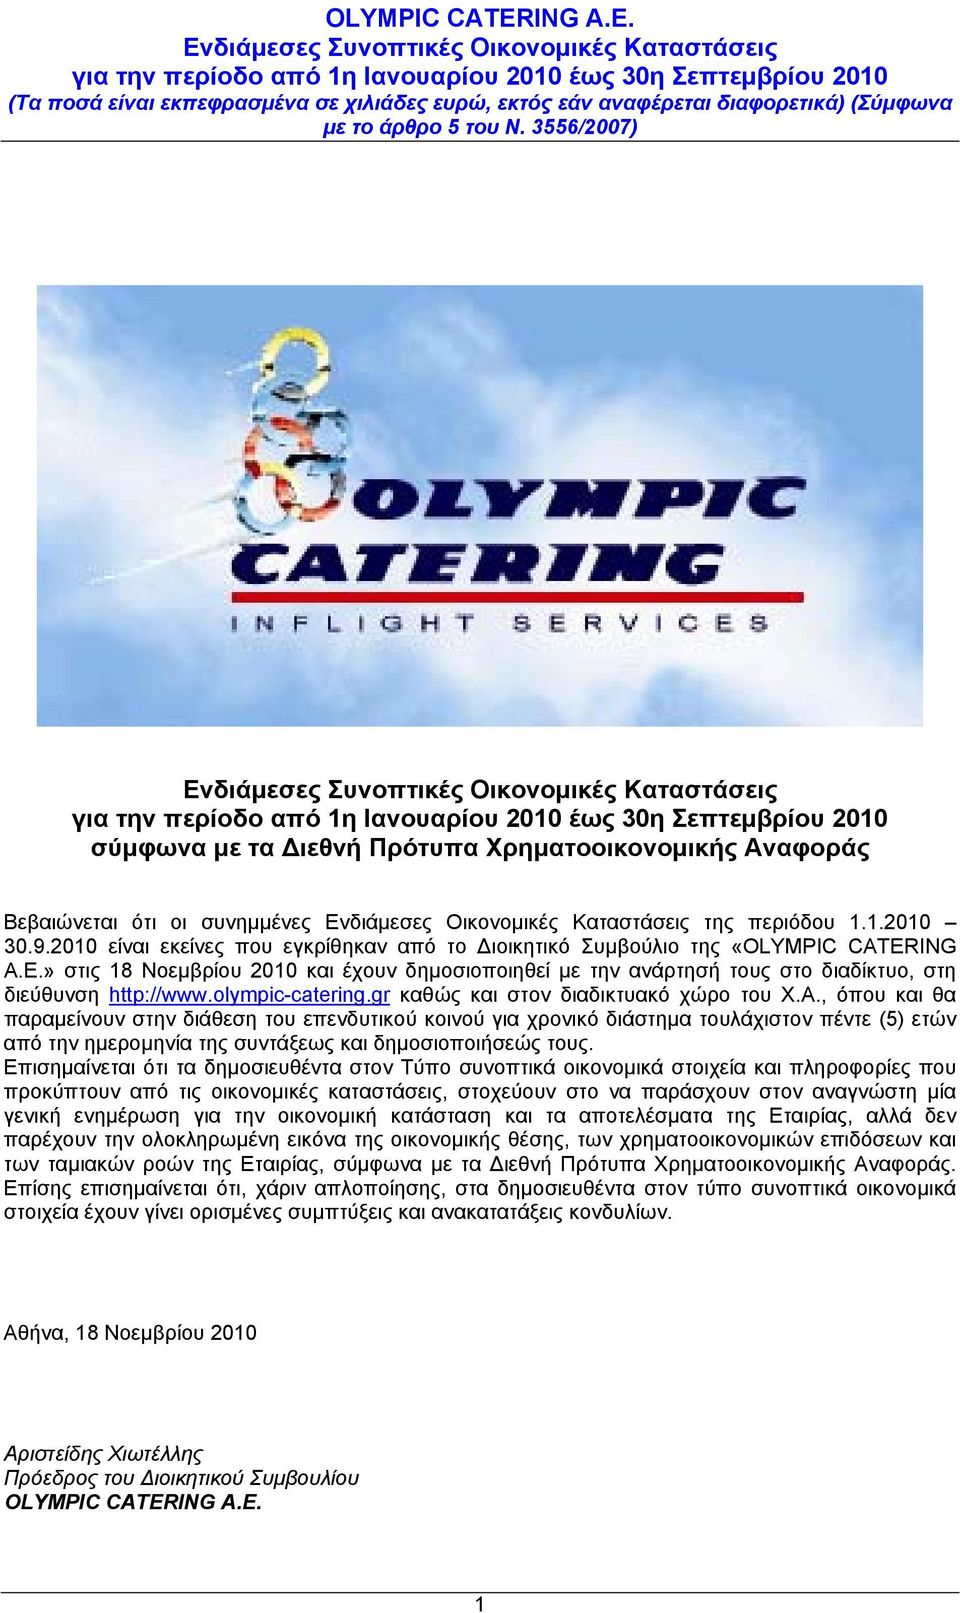 olympic-catering.gr καθώς και στον διαδικτυακό χώρο του Χ.Α.